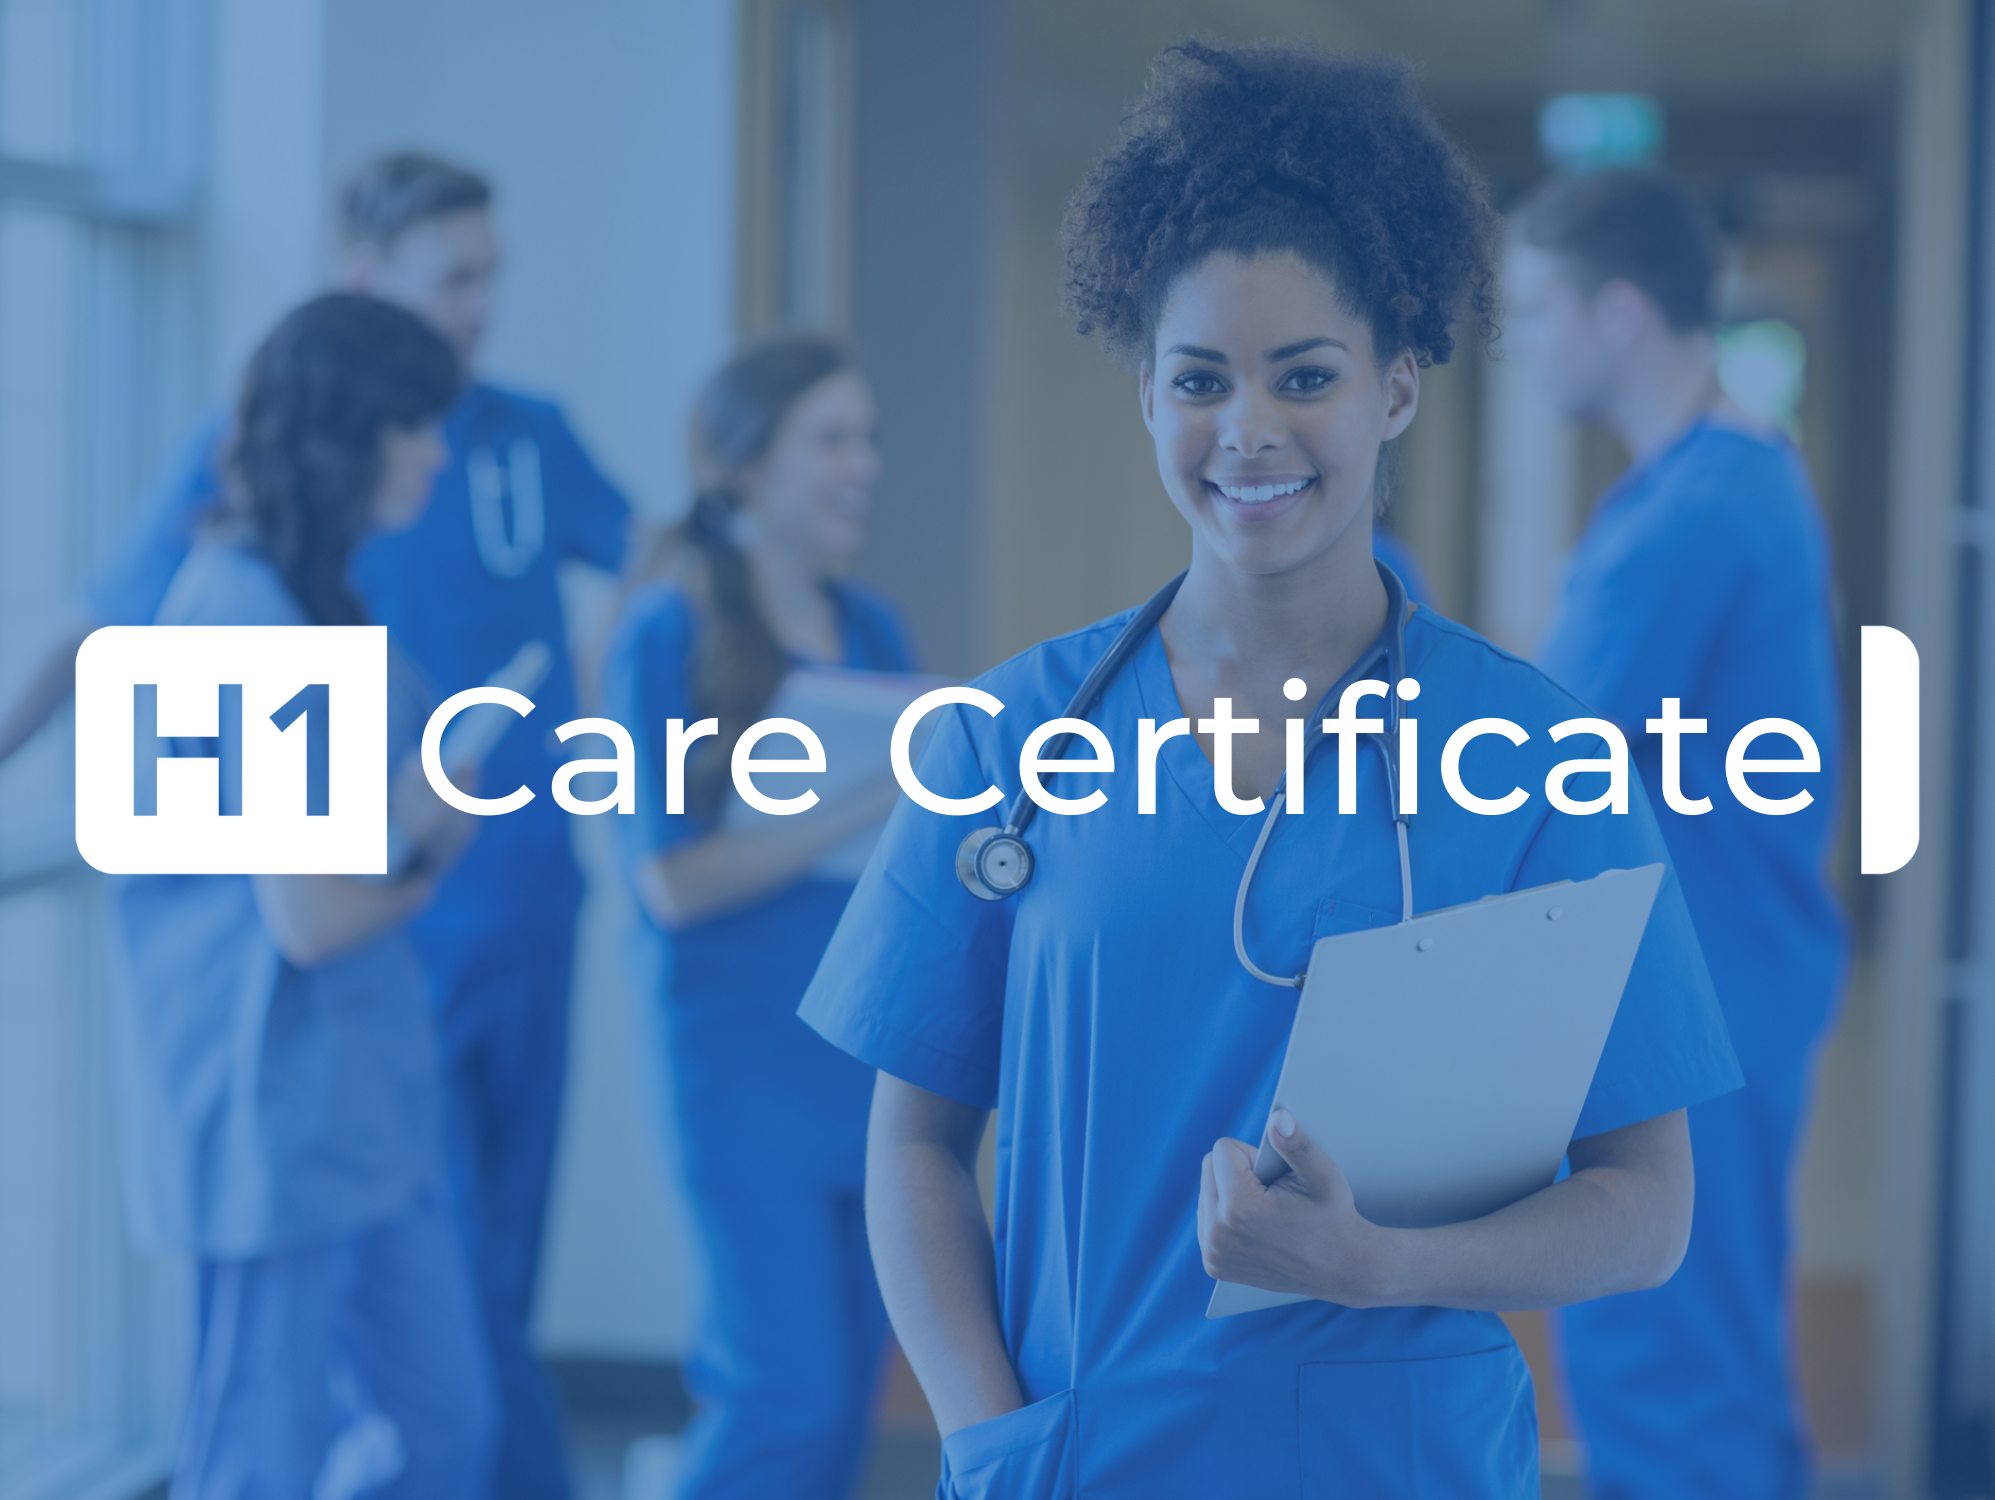 Care Certificate England